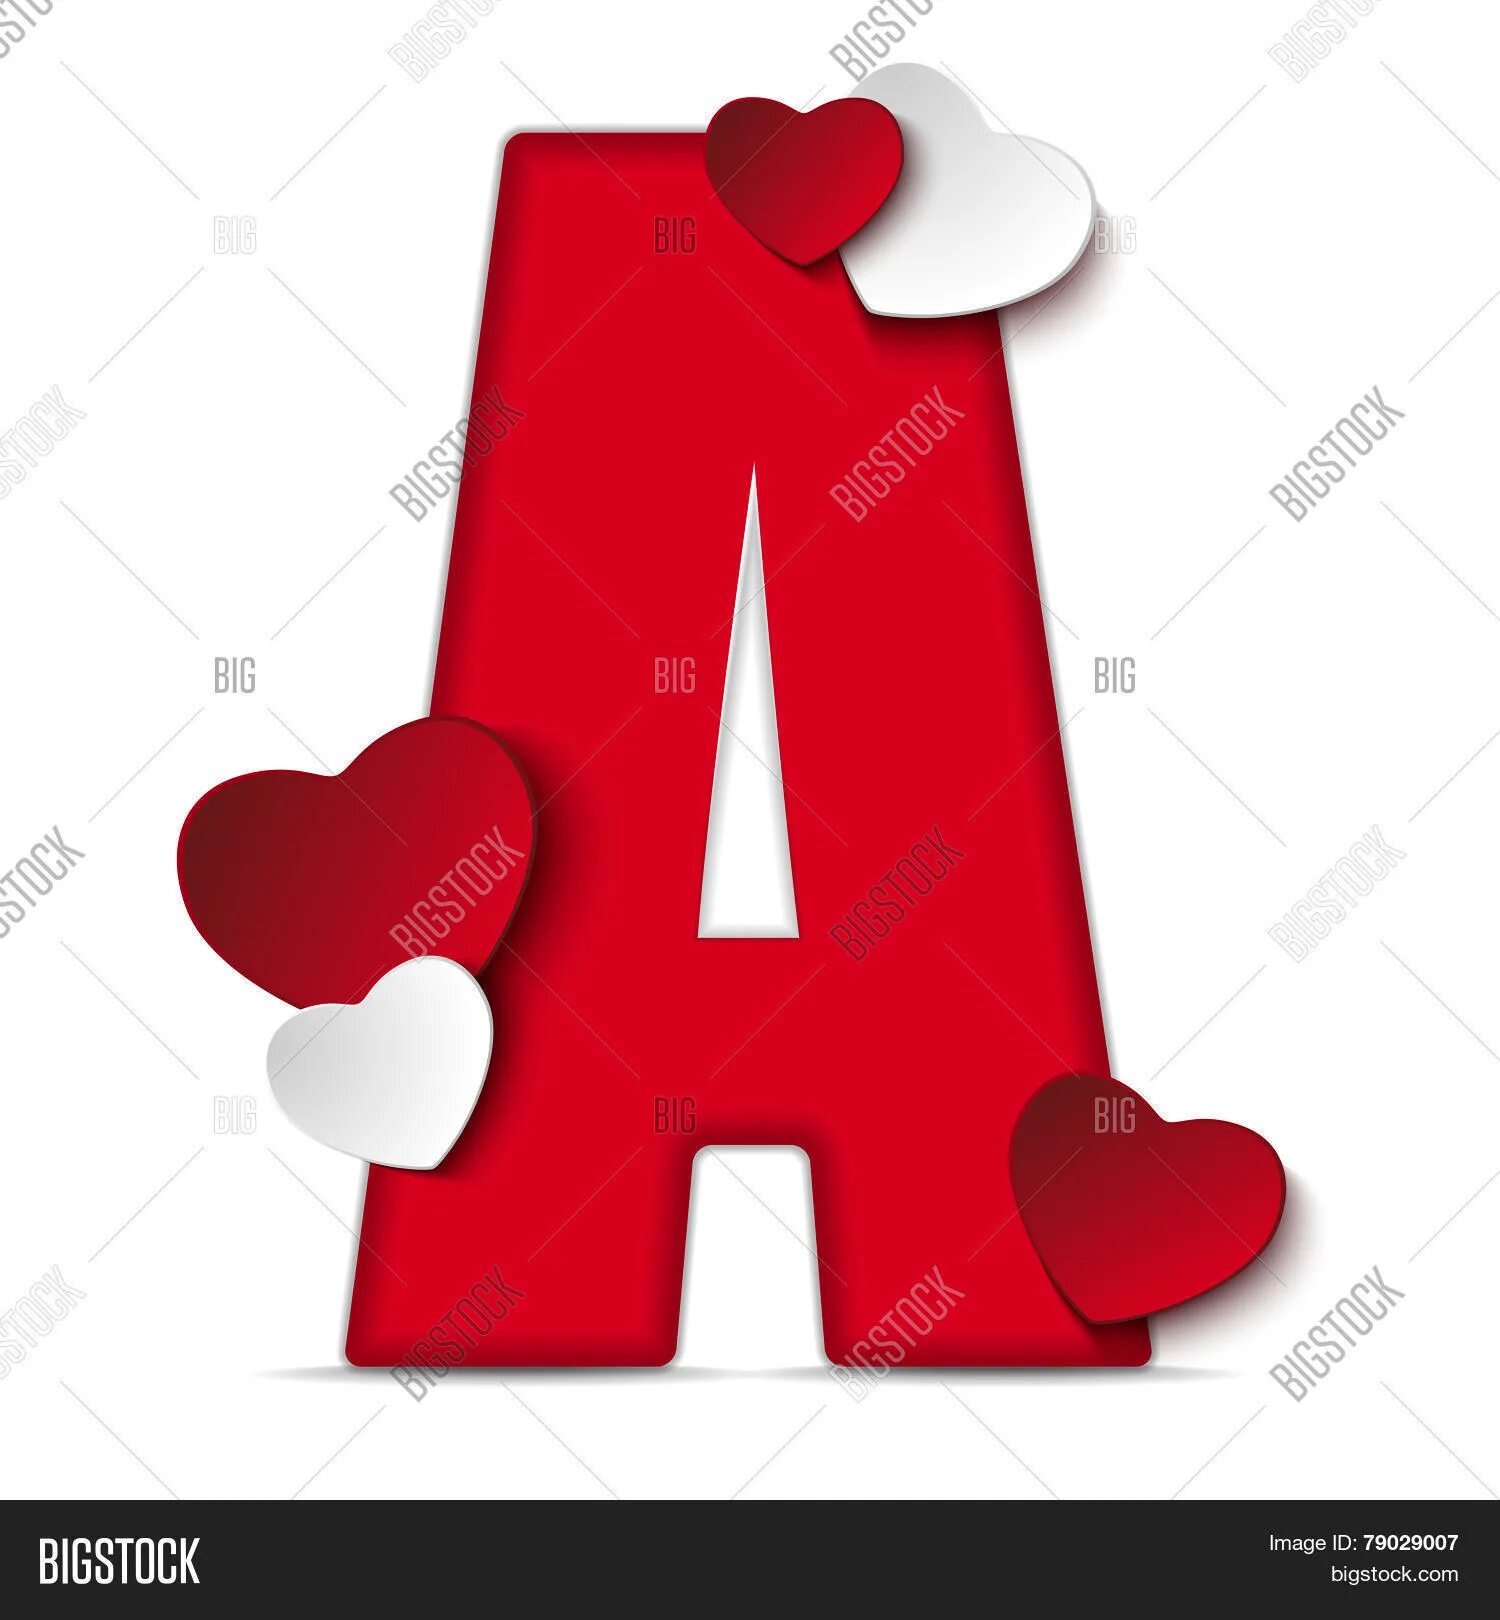 Буквы из сердечек скопировать. Буква а в сердечке. Красивые буквы с сердечками. Сердечки с буквами алфавита. Красные буквы с сердечком.